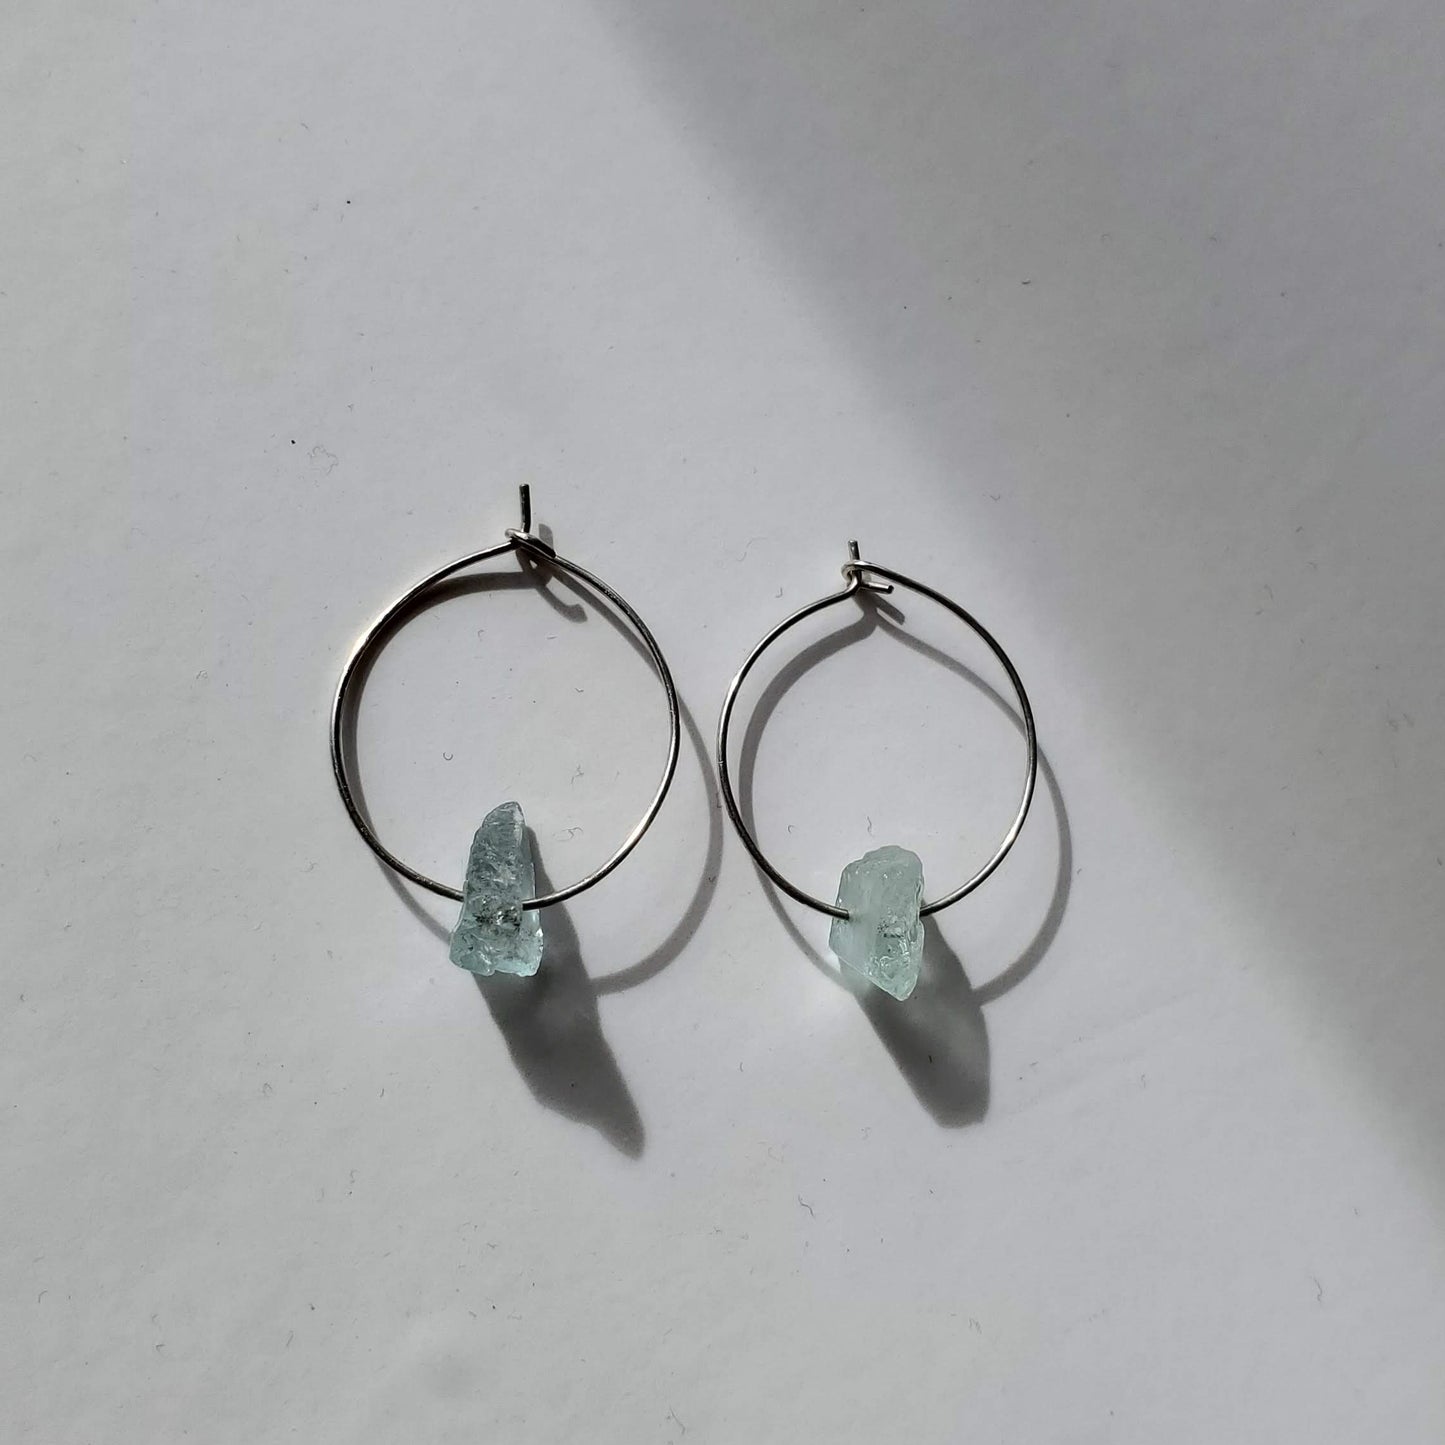 Lena Petite | Sterling Silver Aquamarine Hoop Earrings